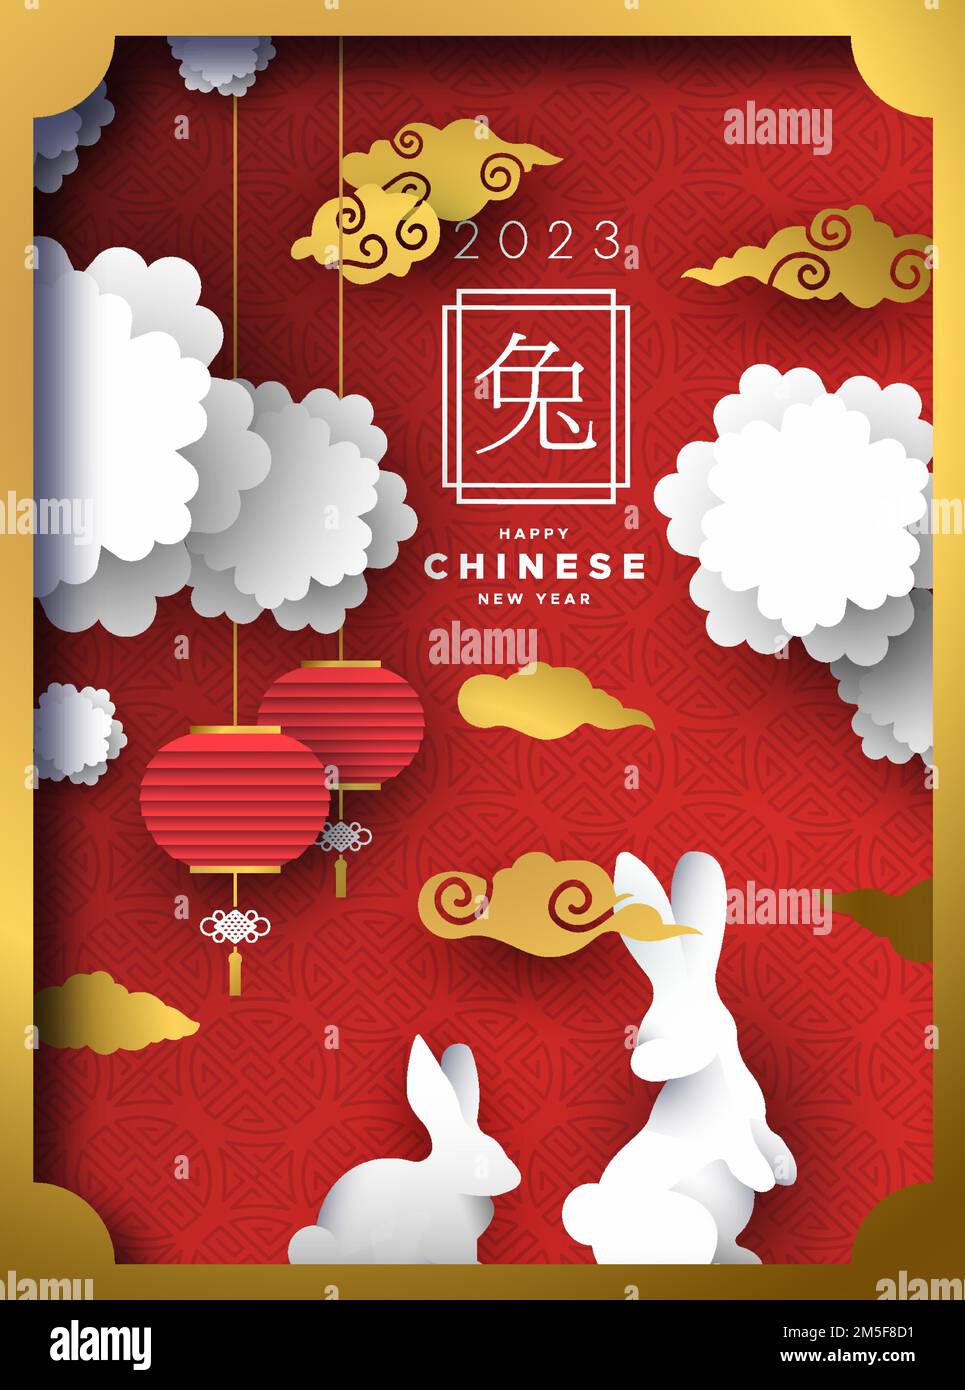 Chinesisches Neujahr 2023 des Kaninchens Illustration von Papierschnitzereien in einer Box mit Kaninchen, Blumen, Wolken und traditionellen asiatischen Laternen. Chinesisch ca. Stock Vektor